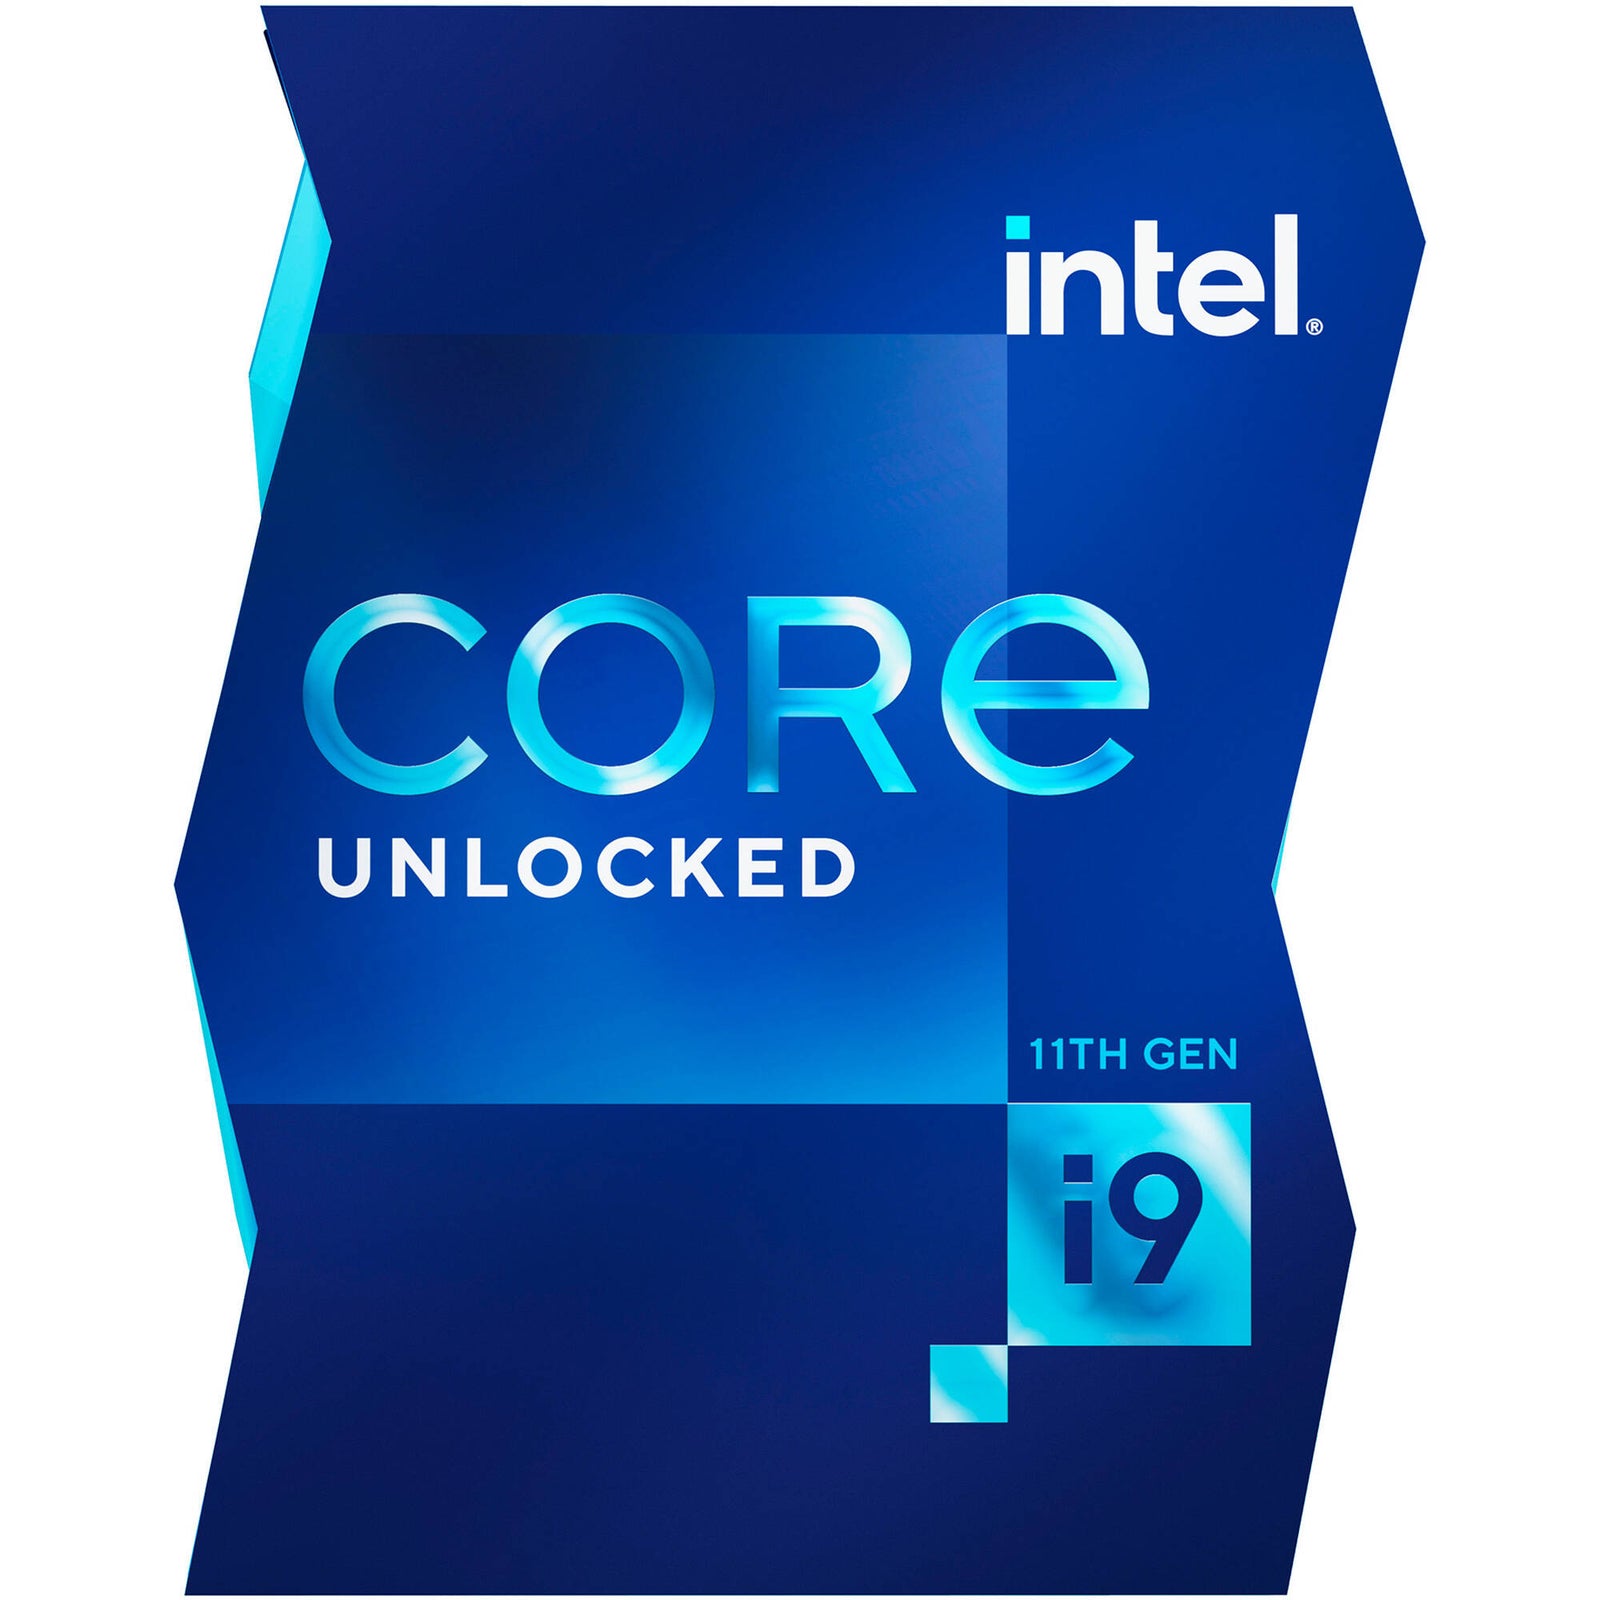 Intel Previews Its 11th Gen Core I9 11900k Processor At Ces 2021 - Vrogue